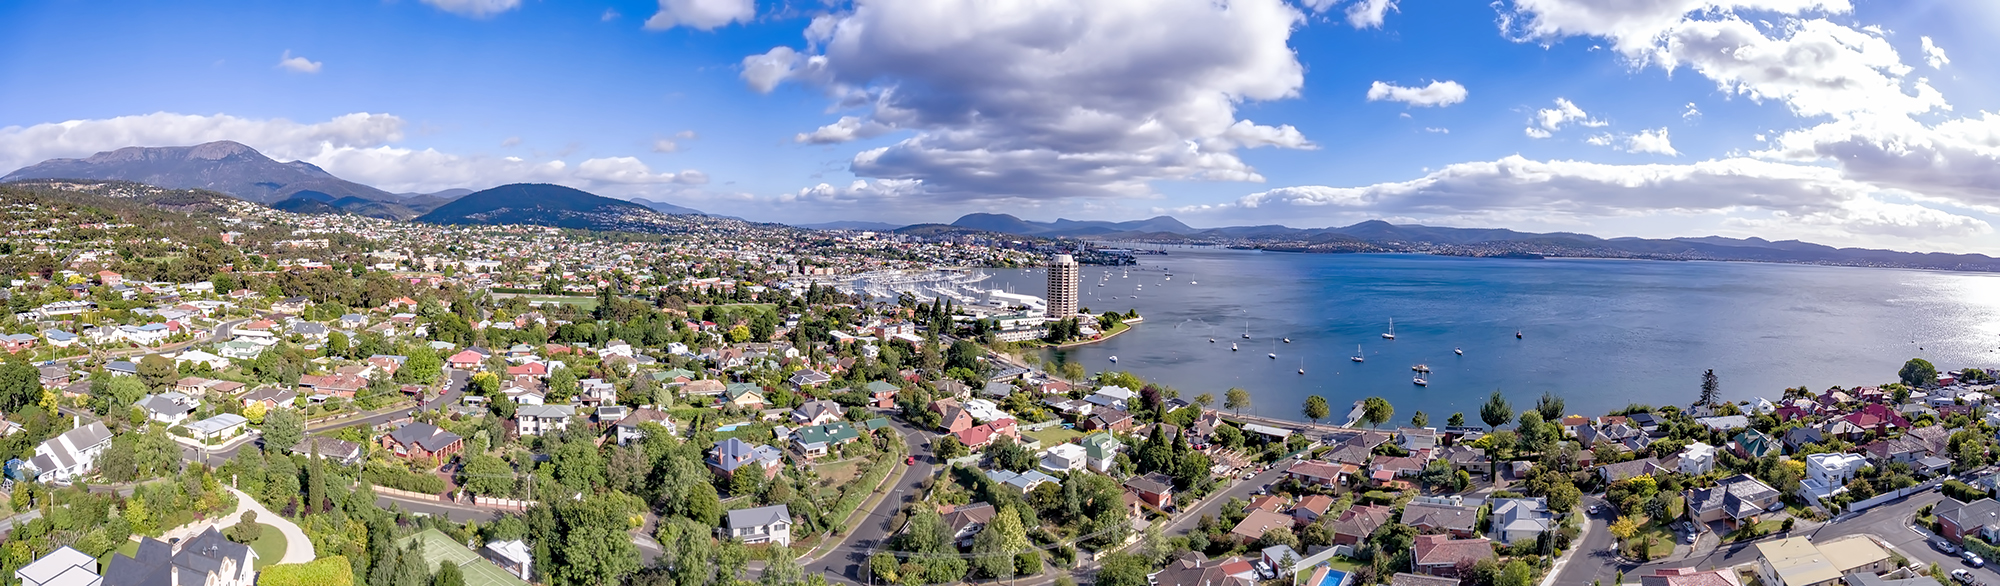 Hobart landscape